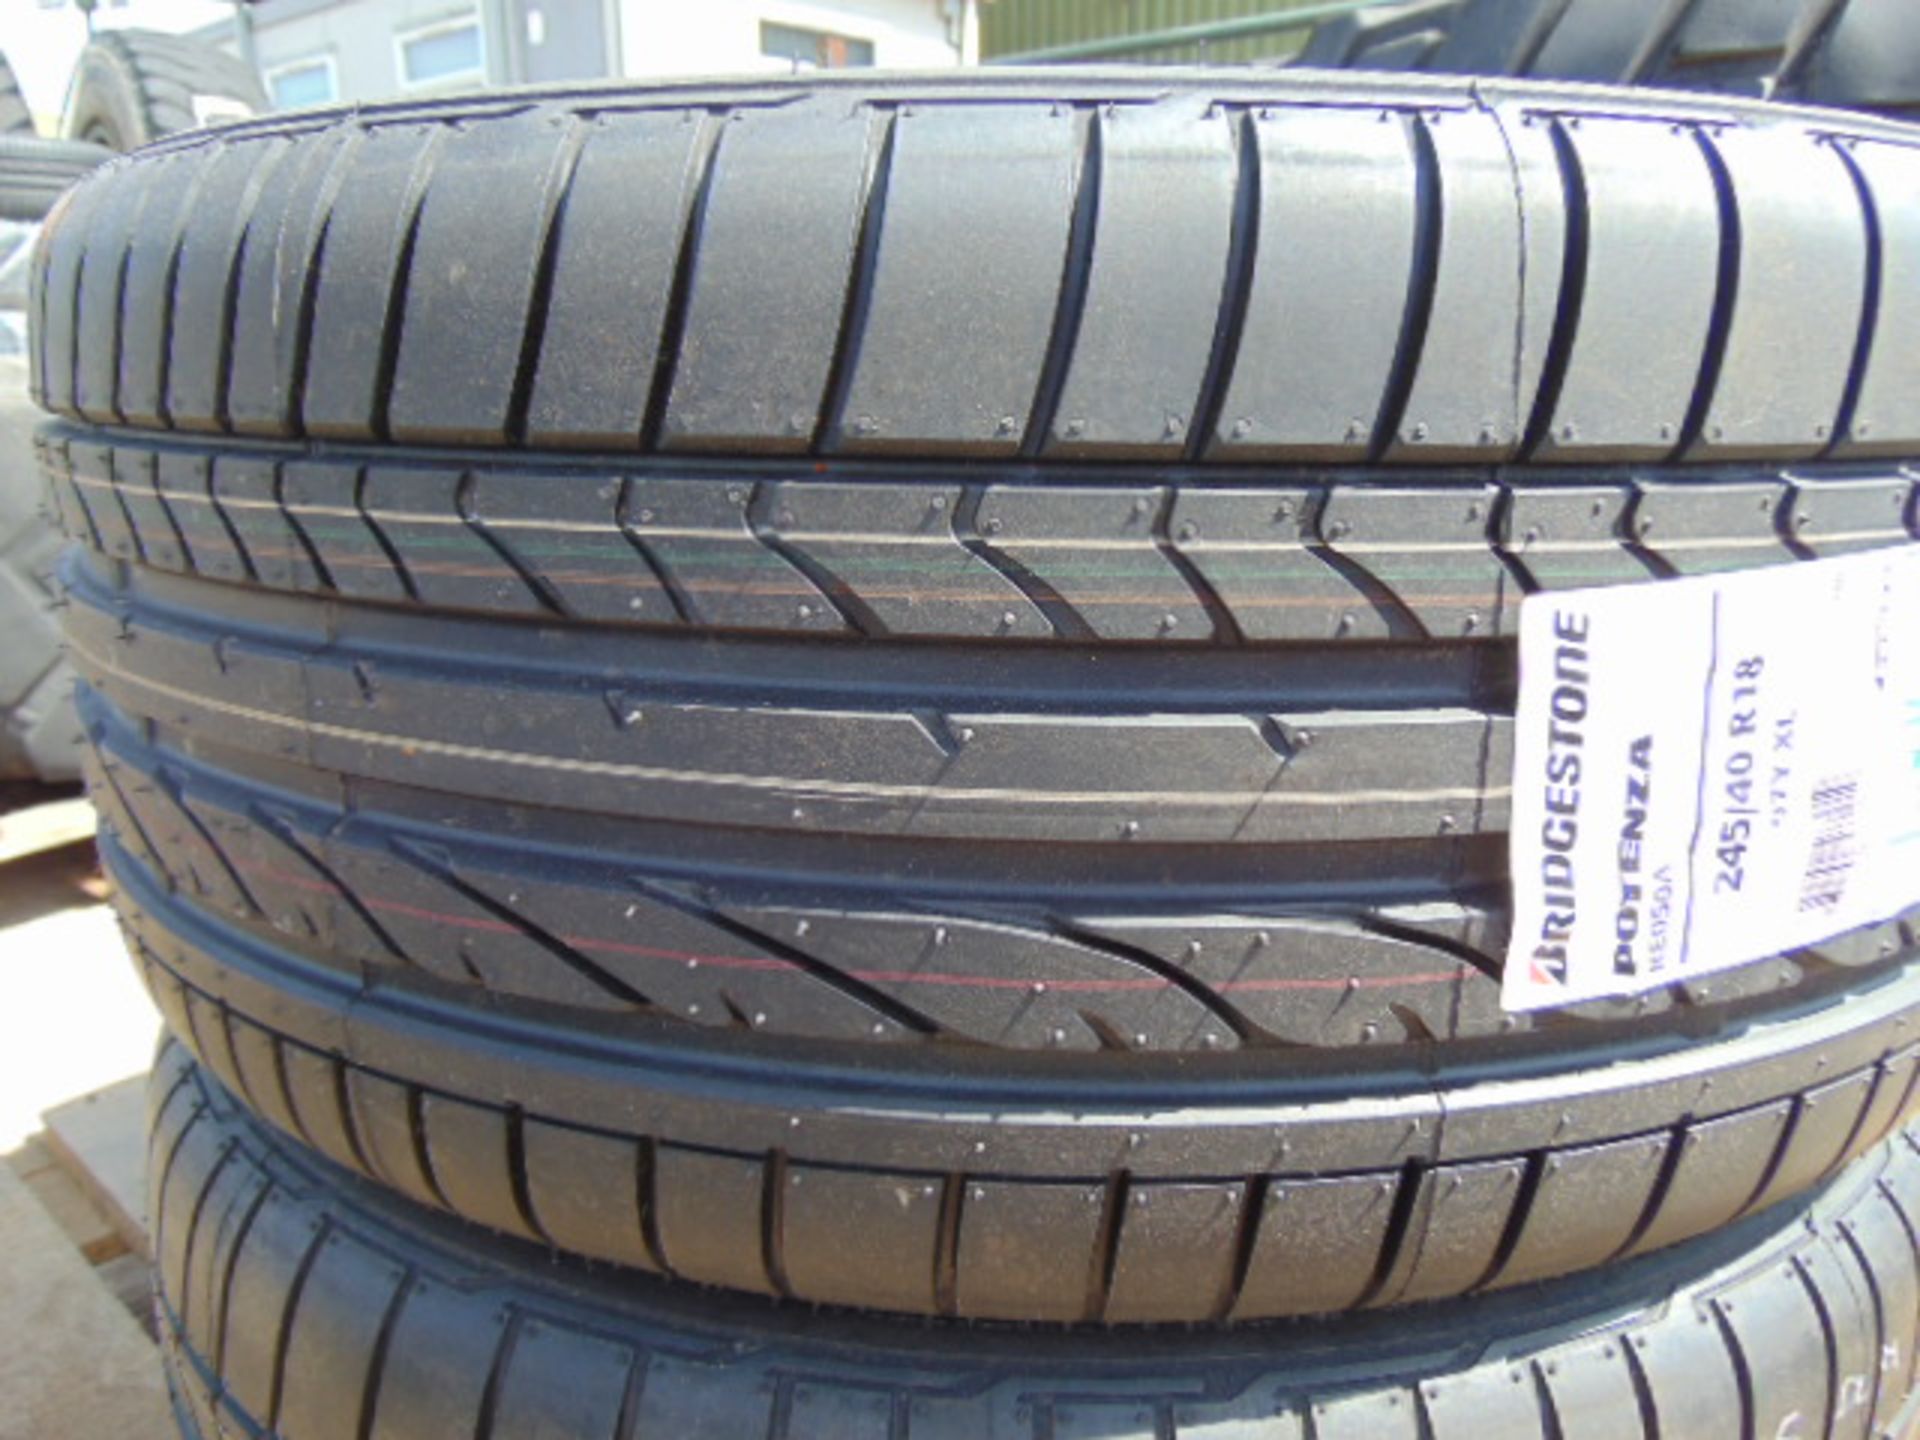 2 x Bridgestone Potenza 245/40 R18 97Y XL Tyres - Image 4 of 6